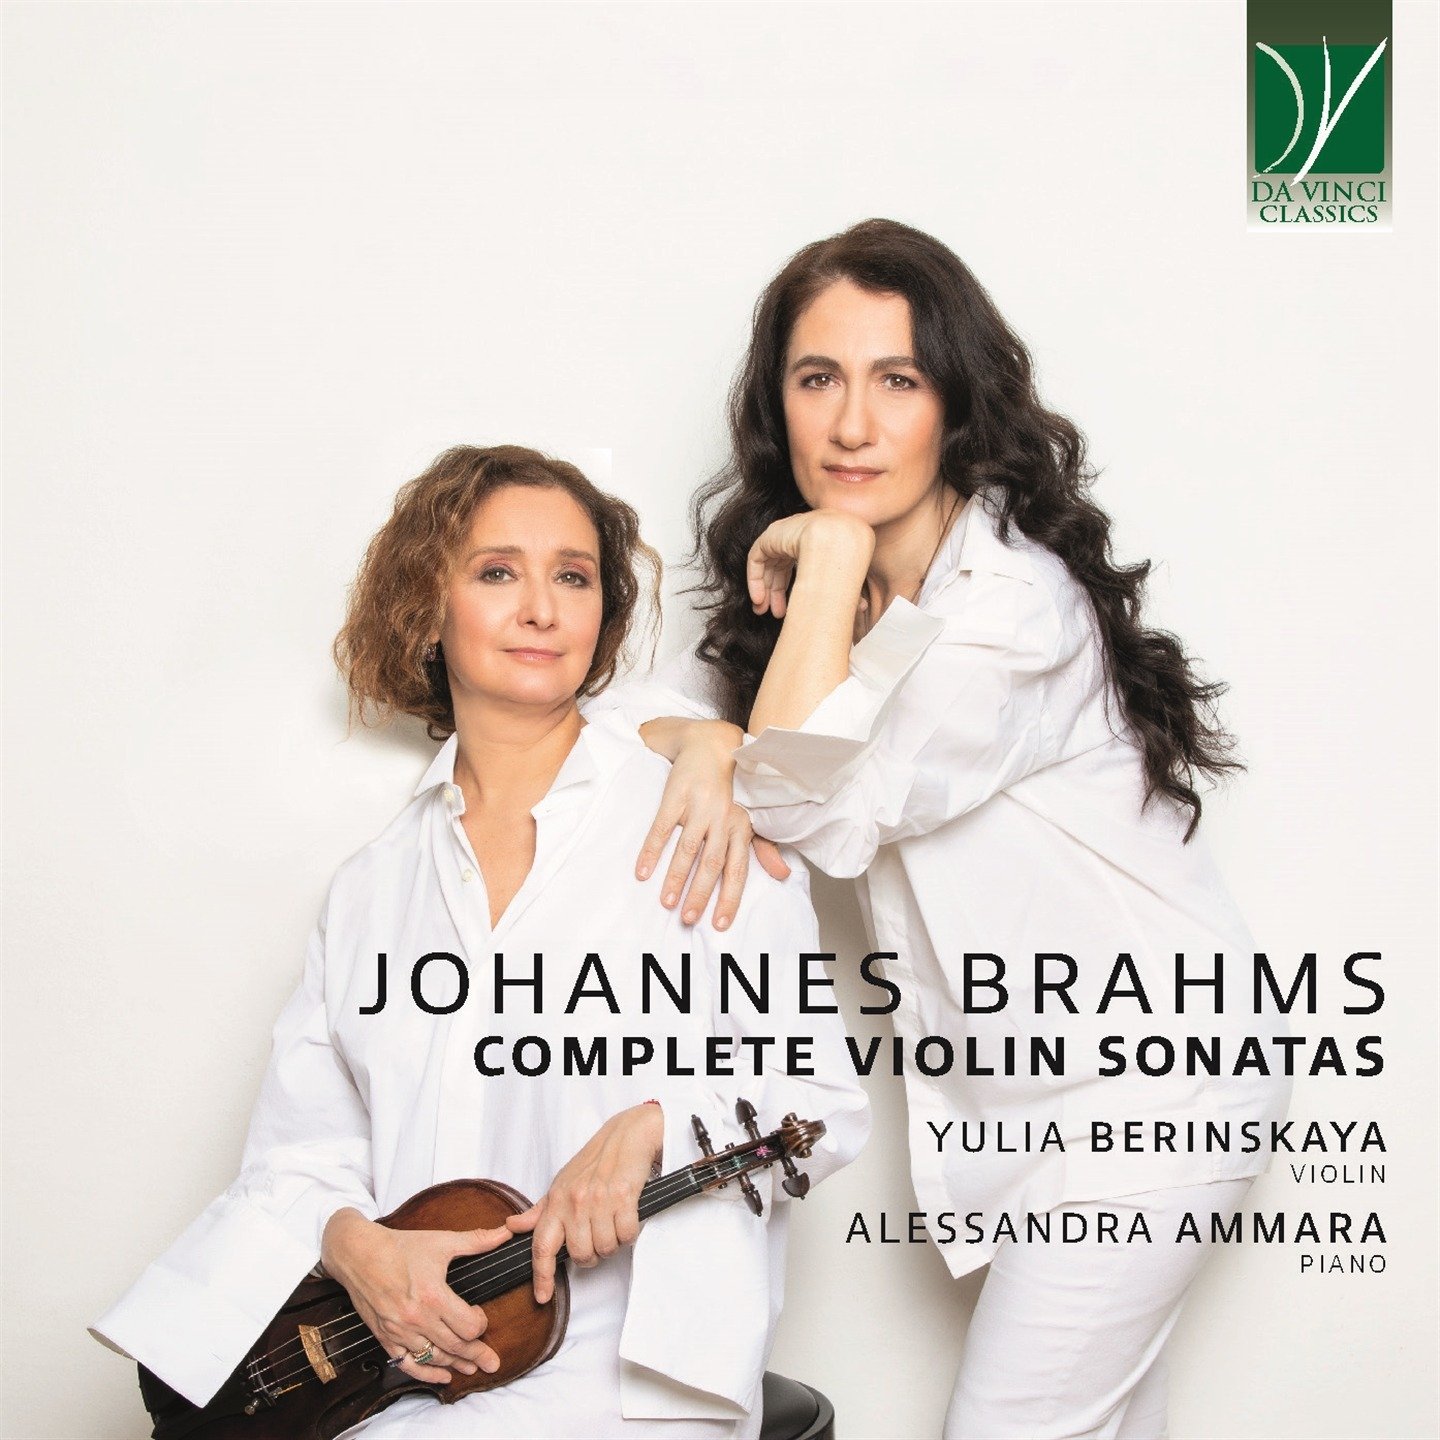 CD Shop - BERINSKAYA, YULIA / ALESS JOHANNES BRAHMS: COMPLETE VIOLIN SONATAS